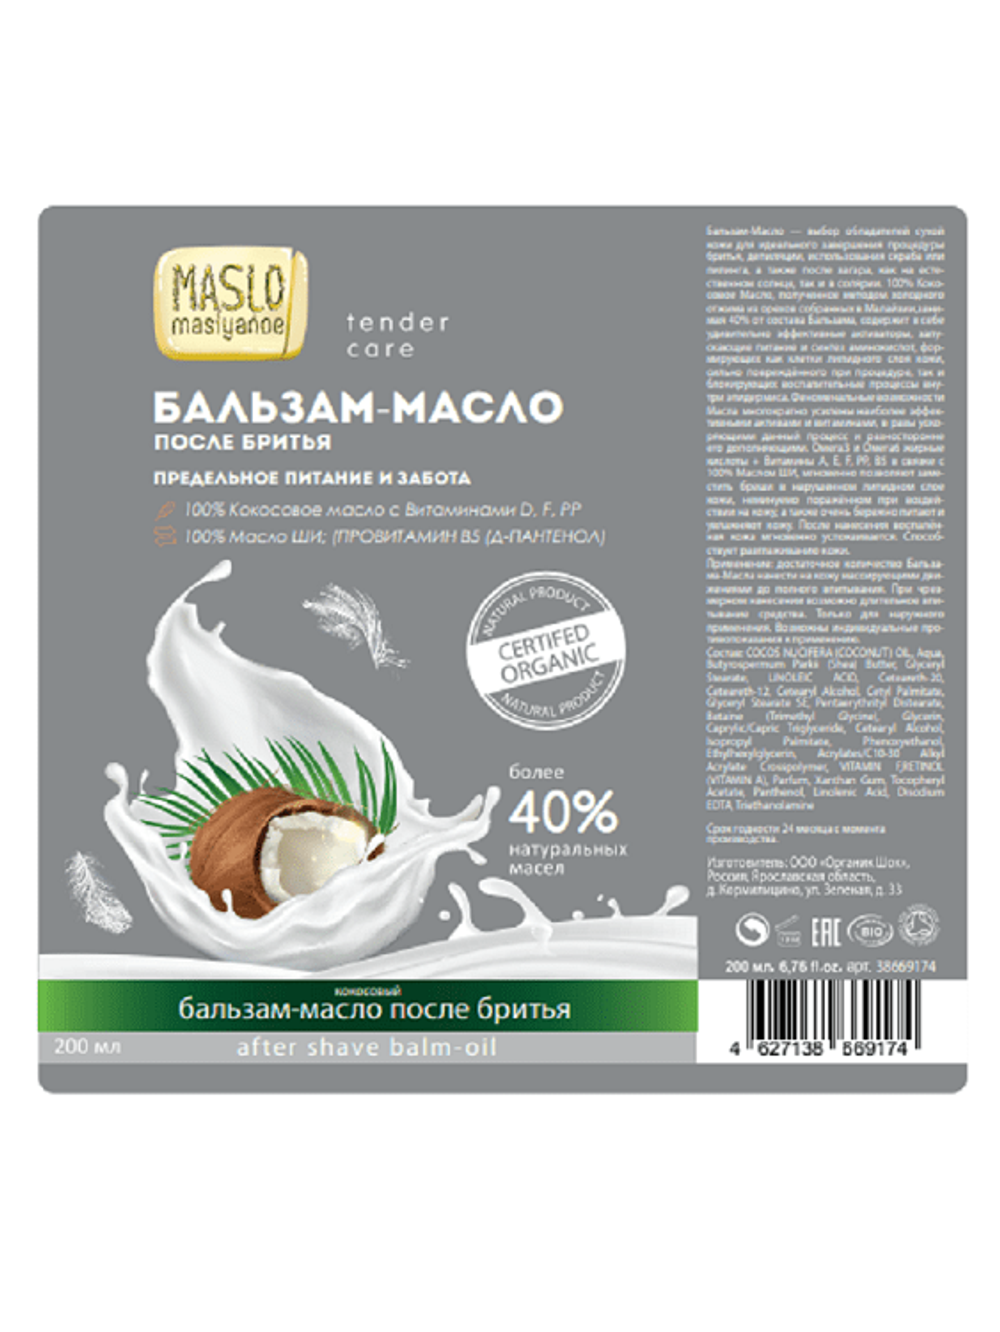 Maslo Maslyanoe Бальзам-масло после бритья Кокосовый, предельное питание и забота, 200 мл